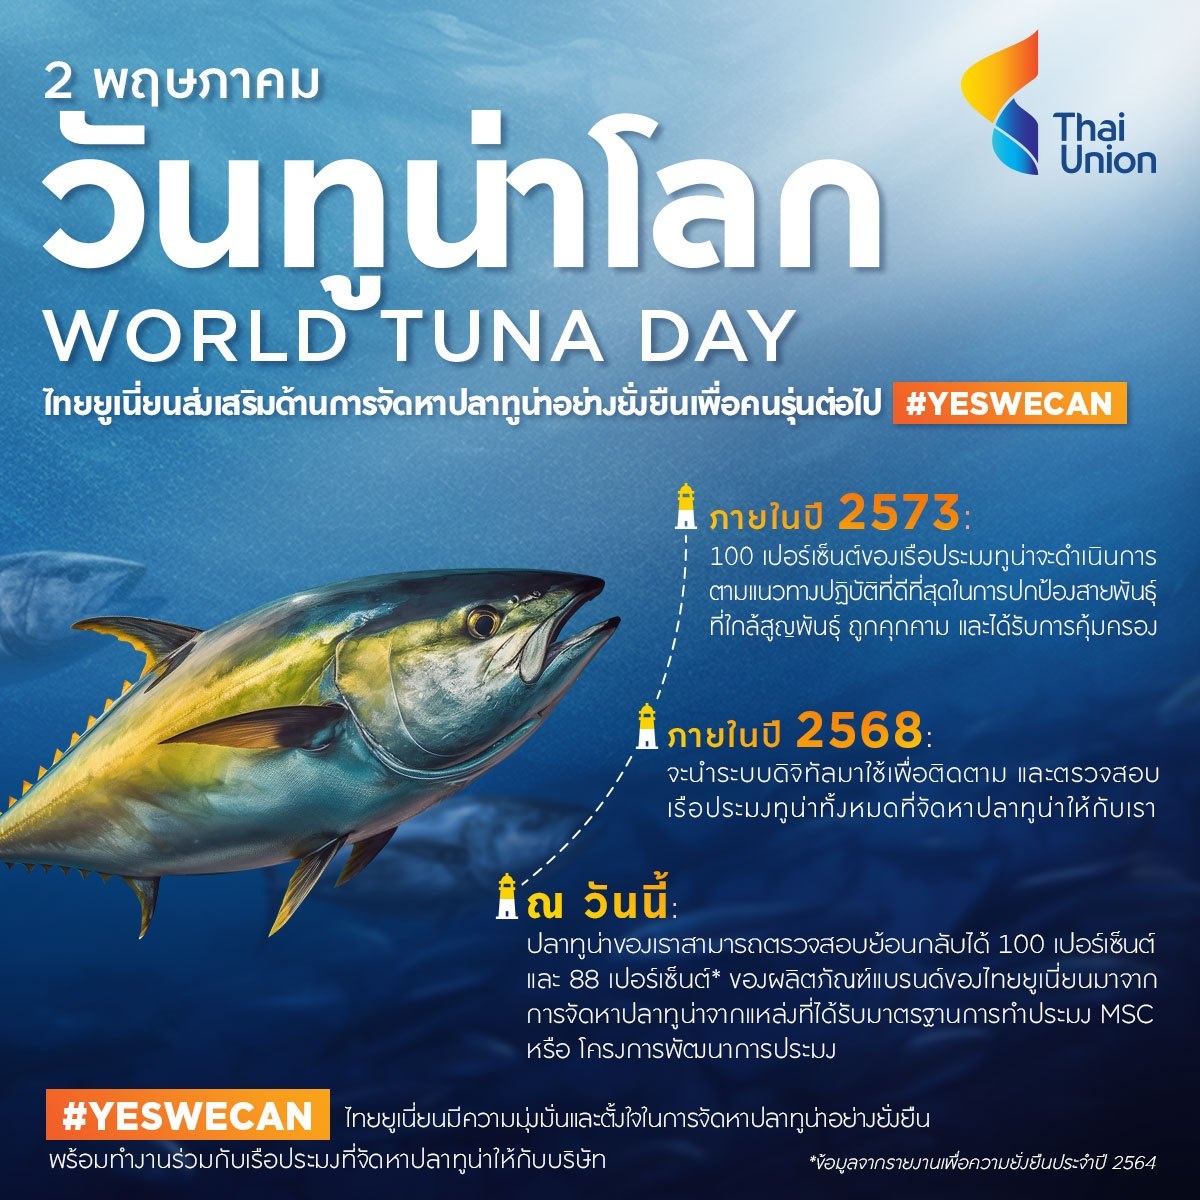 ไทยยูเนี่ยน เดินหน้ากลยุทธ์ Seachange(R) เข้มข้น ประกาศดันจัดหาปลาทูน่าแบบยั่งยืนในวันทูน่าโลก